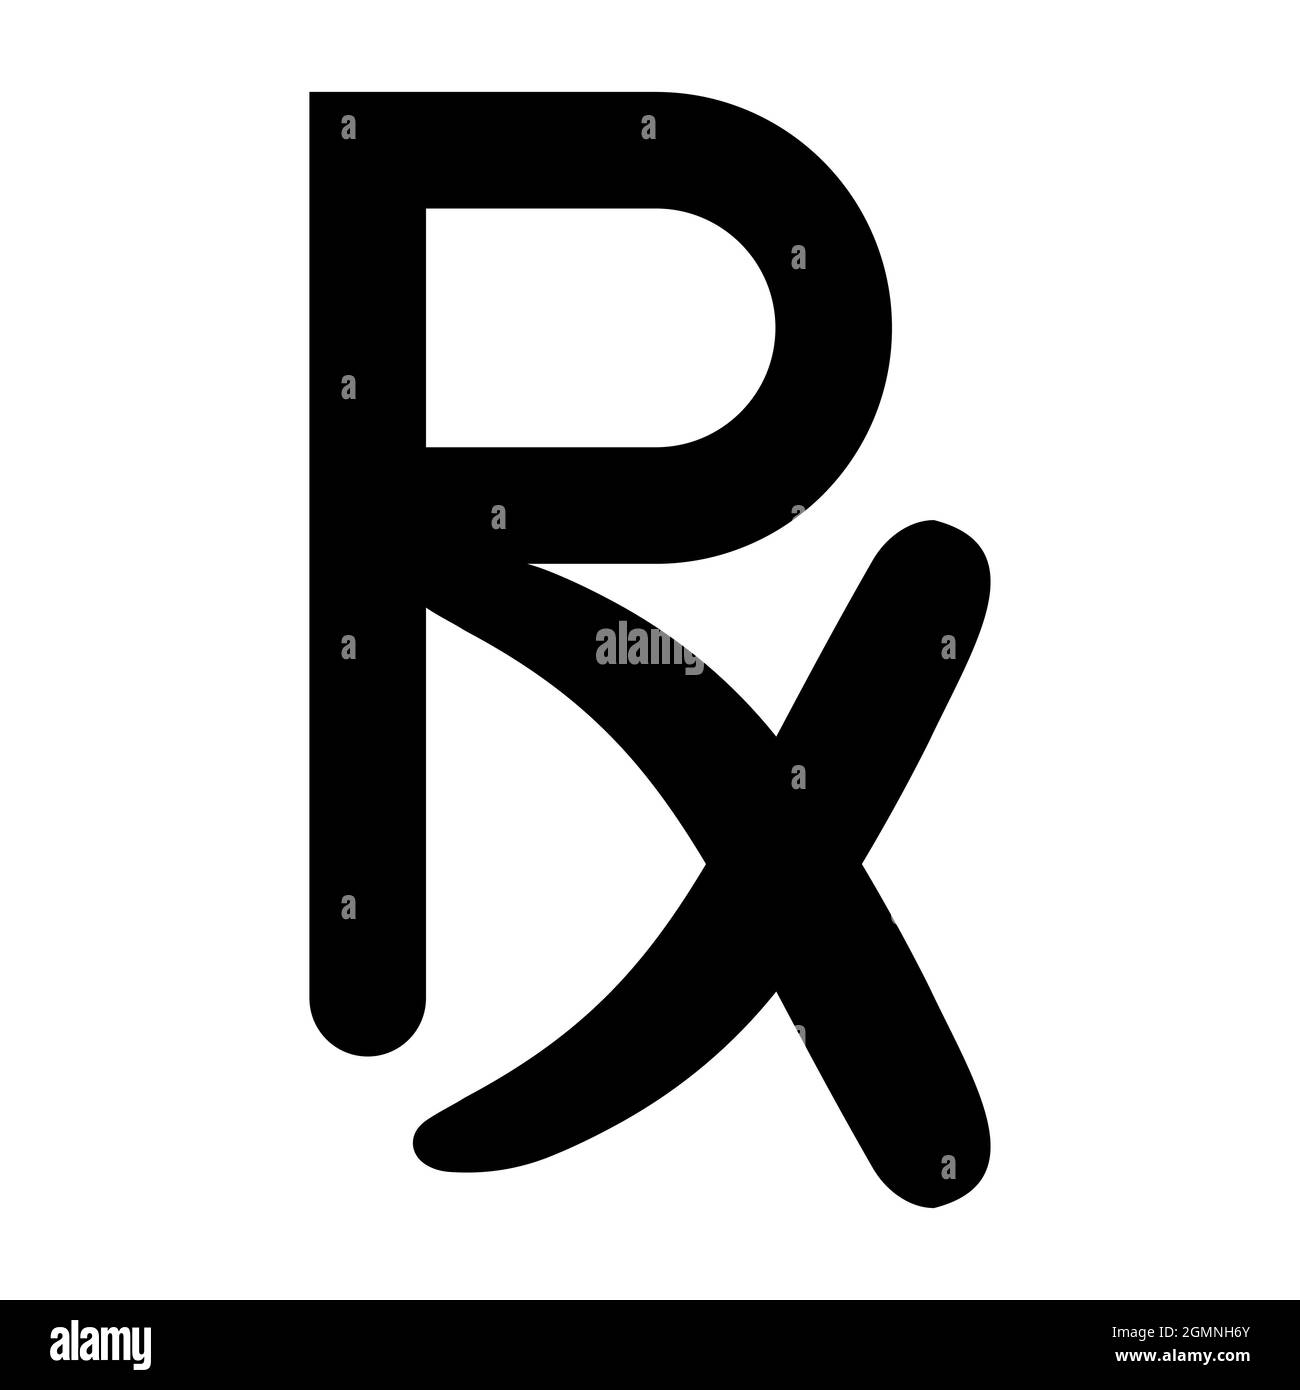 Symbole médical signalisation sur ordonnance le médecin et le médecin ont exigé des médicaments et une ordonnance pour des médicaments pharmaceutiques Illustration de Vecteur